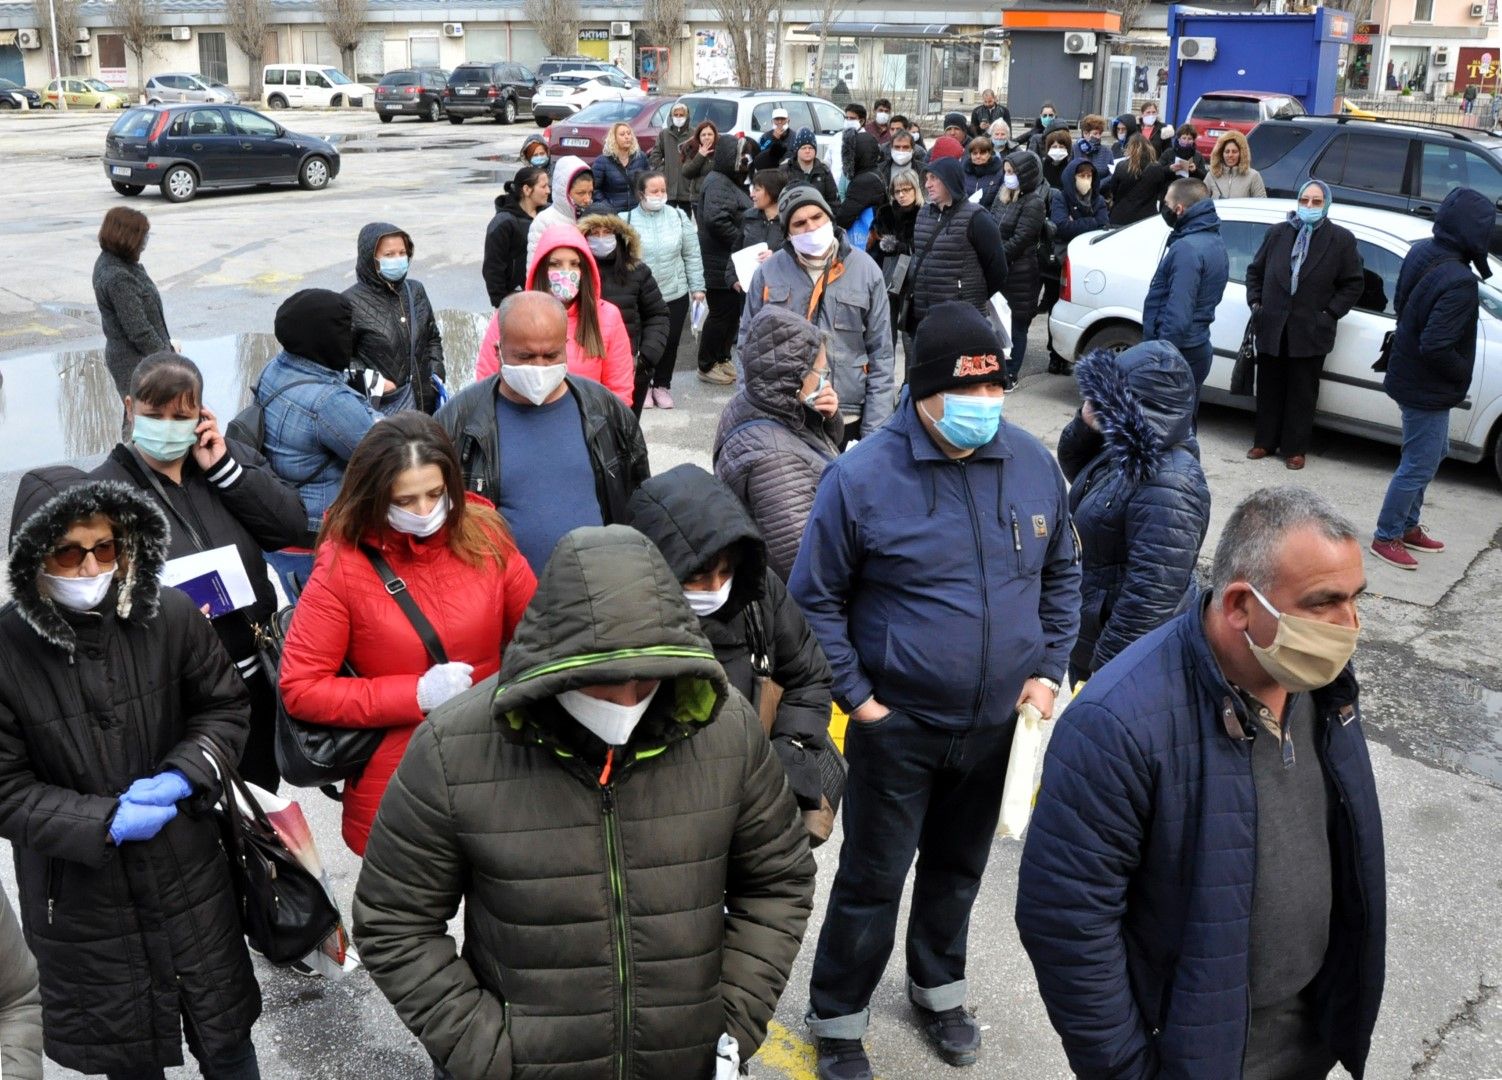 Отрано пред бюрото по труда към Агенция по заетостта в Хасково се извива огромна опашка от безработни дошли да се регистрират (Снимка 6 април)